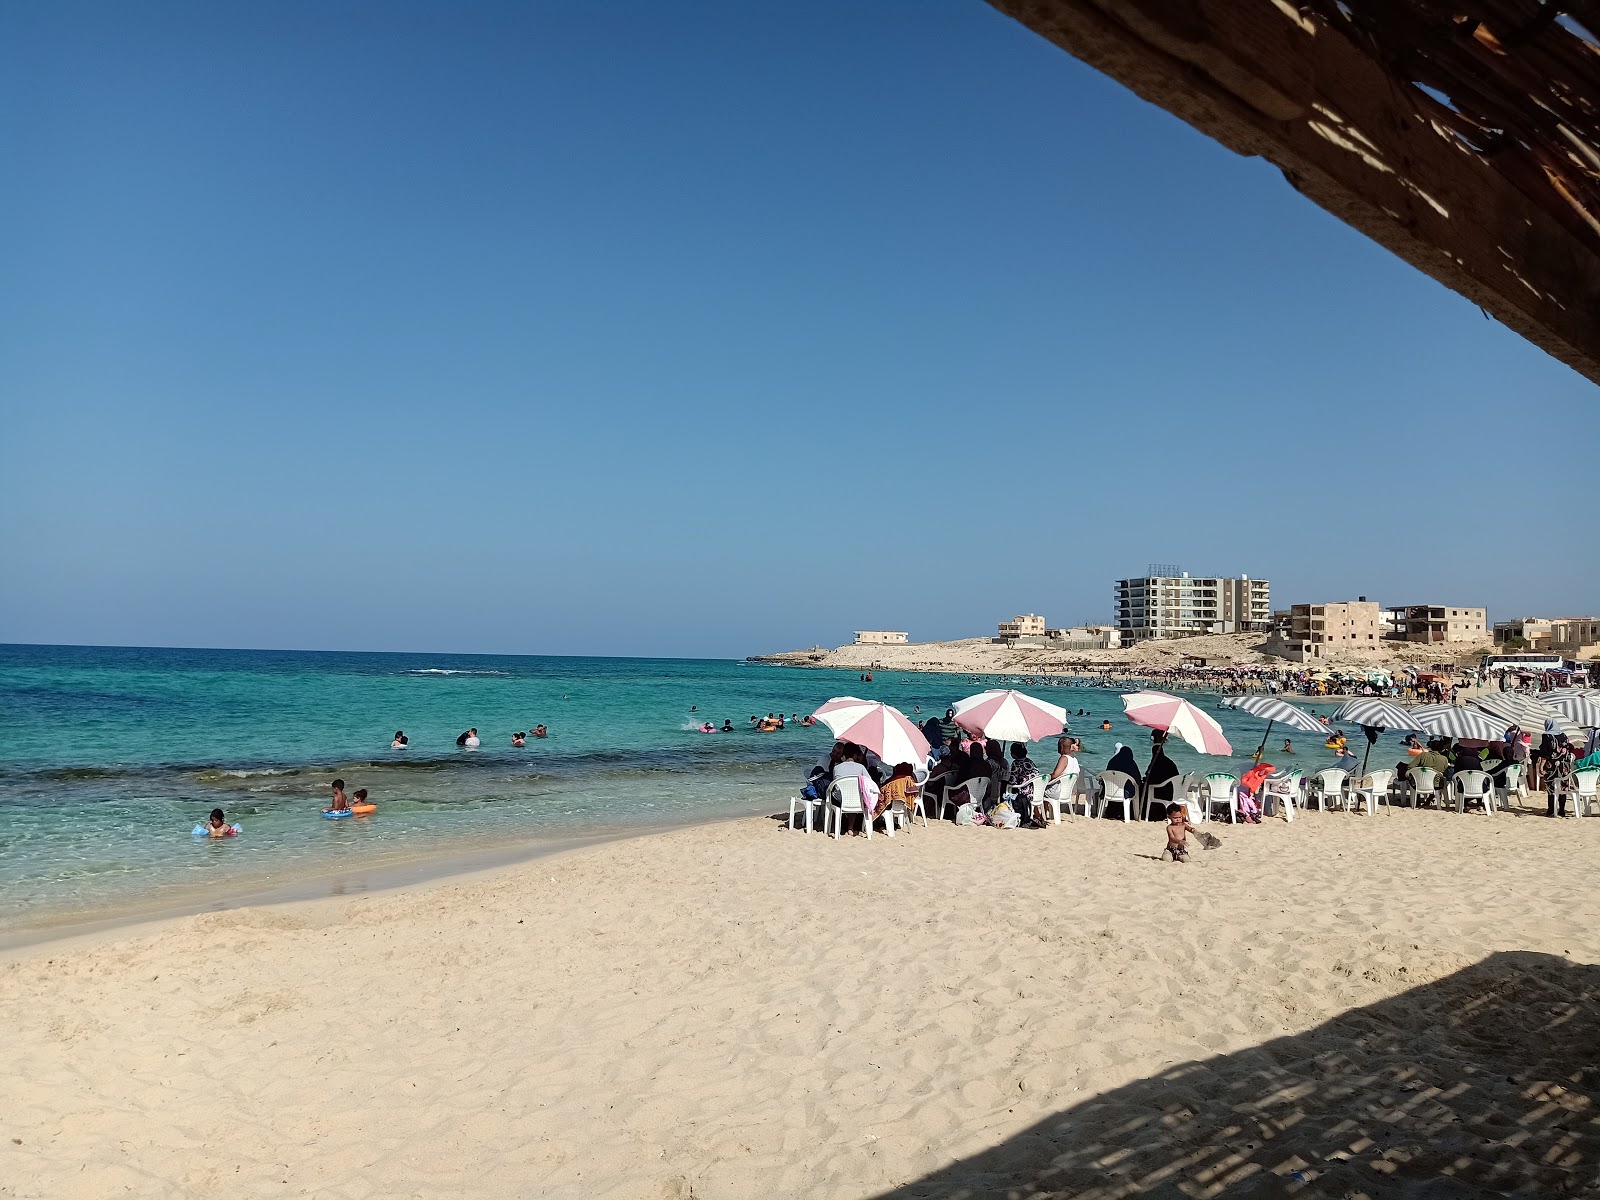 Photo de Minaa Alhasheesh beach - endroit populaire parmi les connaisseurs de la détente